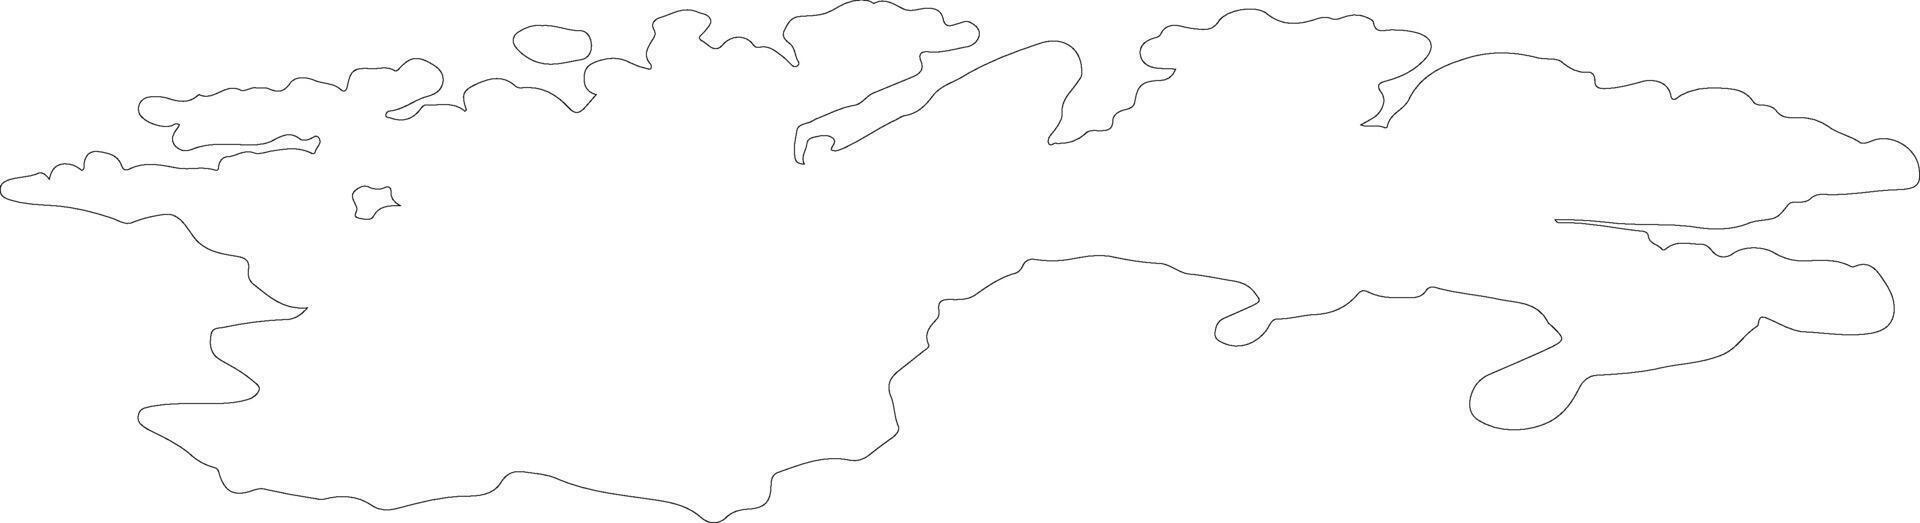 Finnmark Noruega esboço mapa vetor